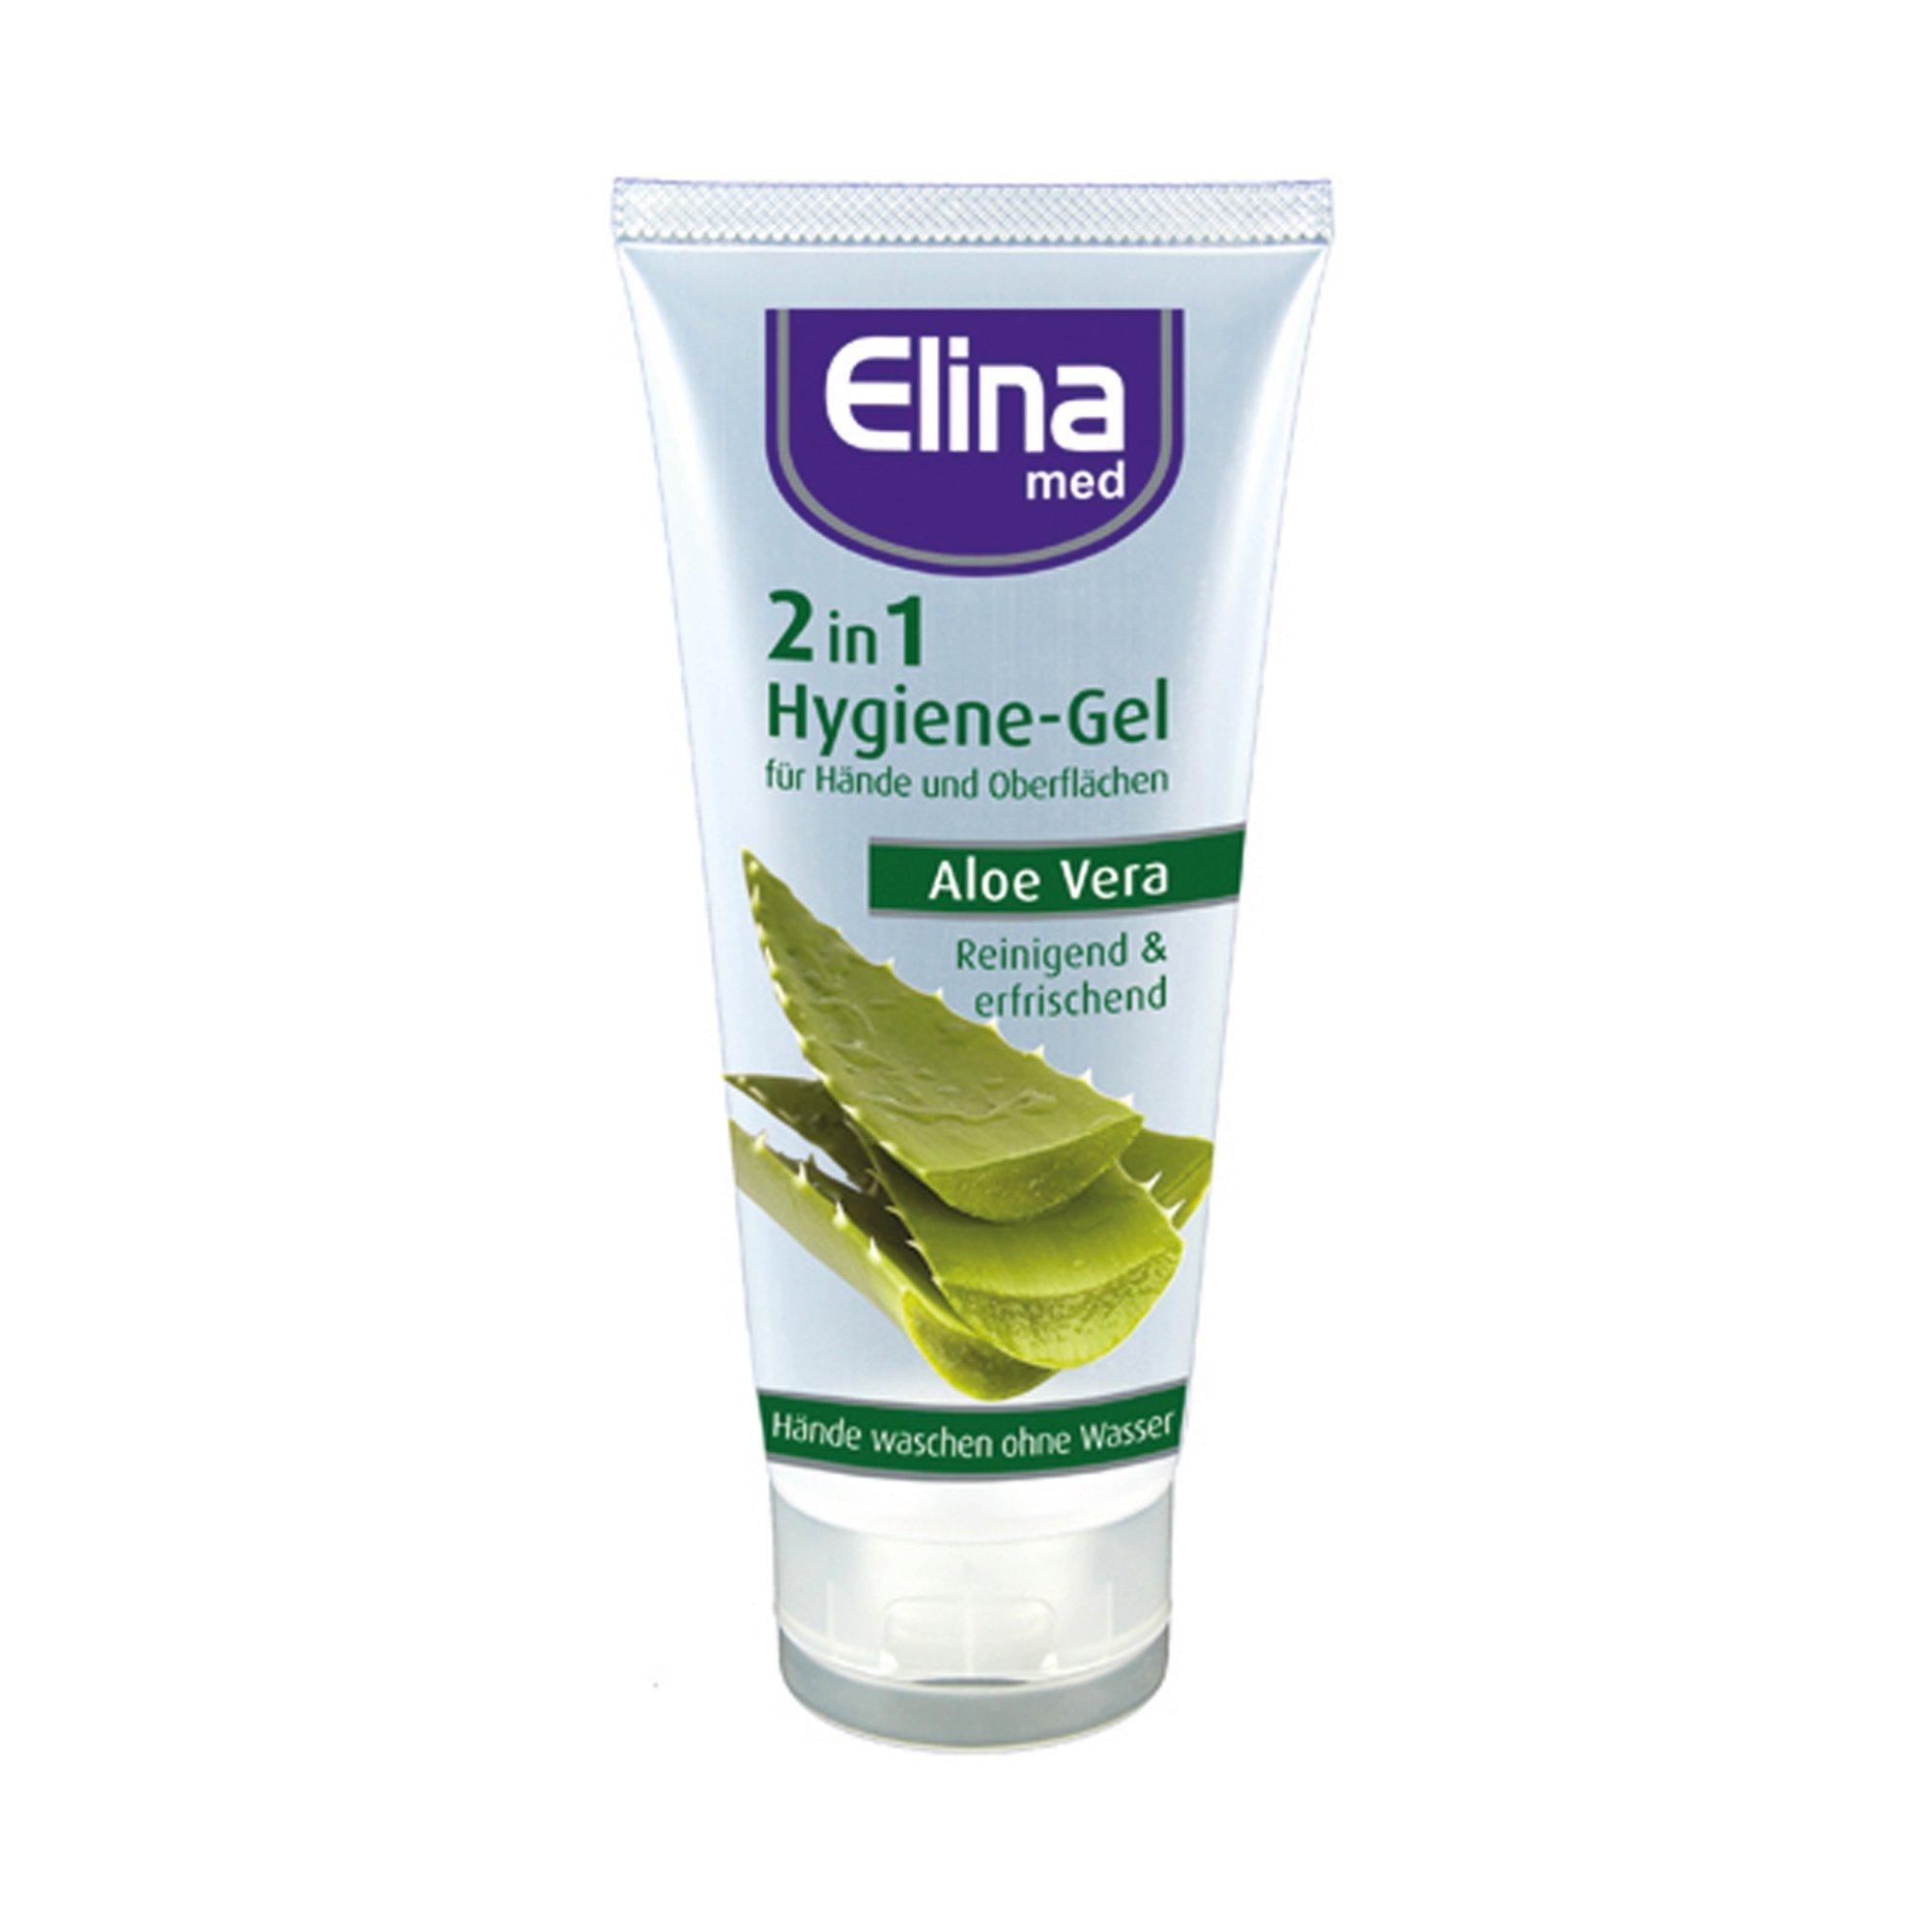 Image of Elina Aloe Vera Aloe Vera Hygiene Gel 2in1 - 75ml